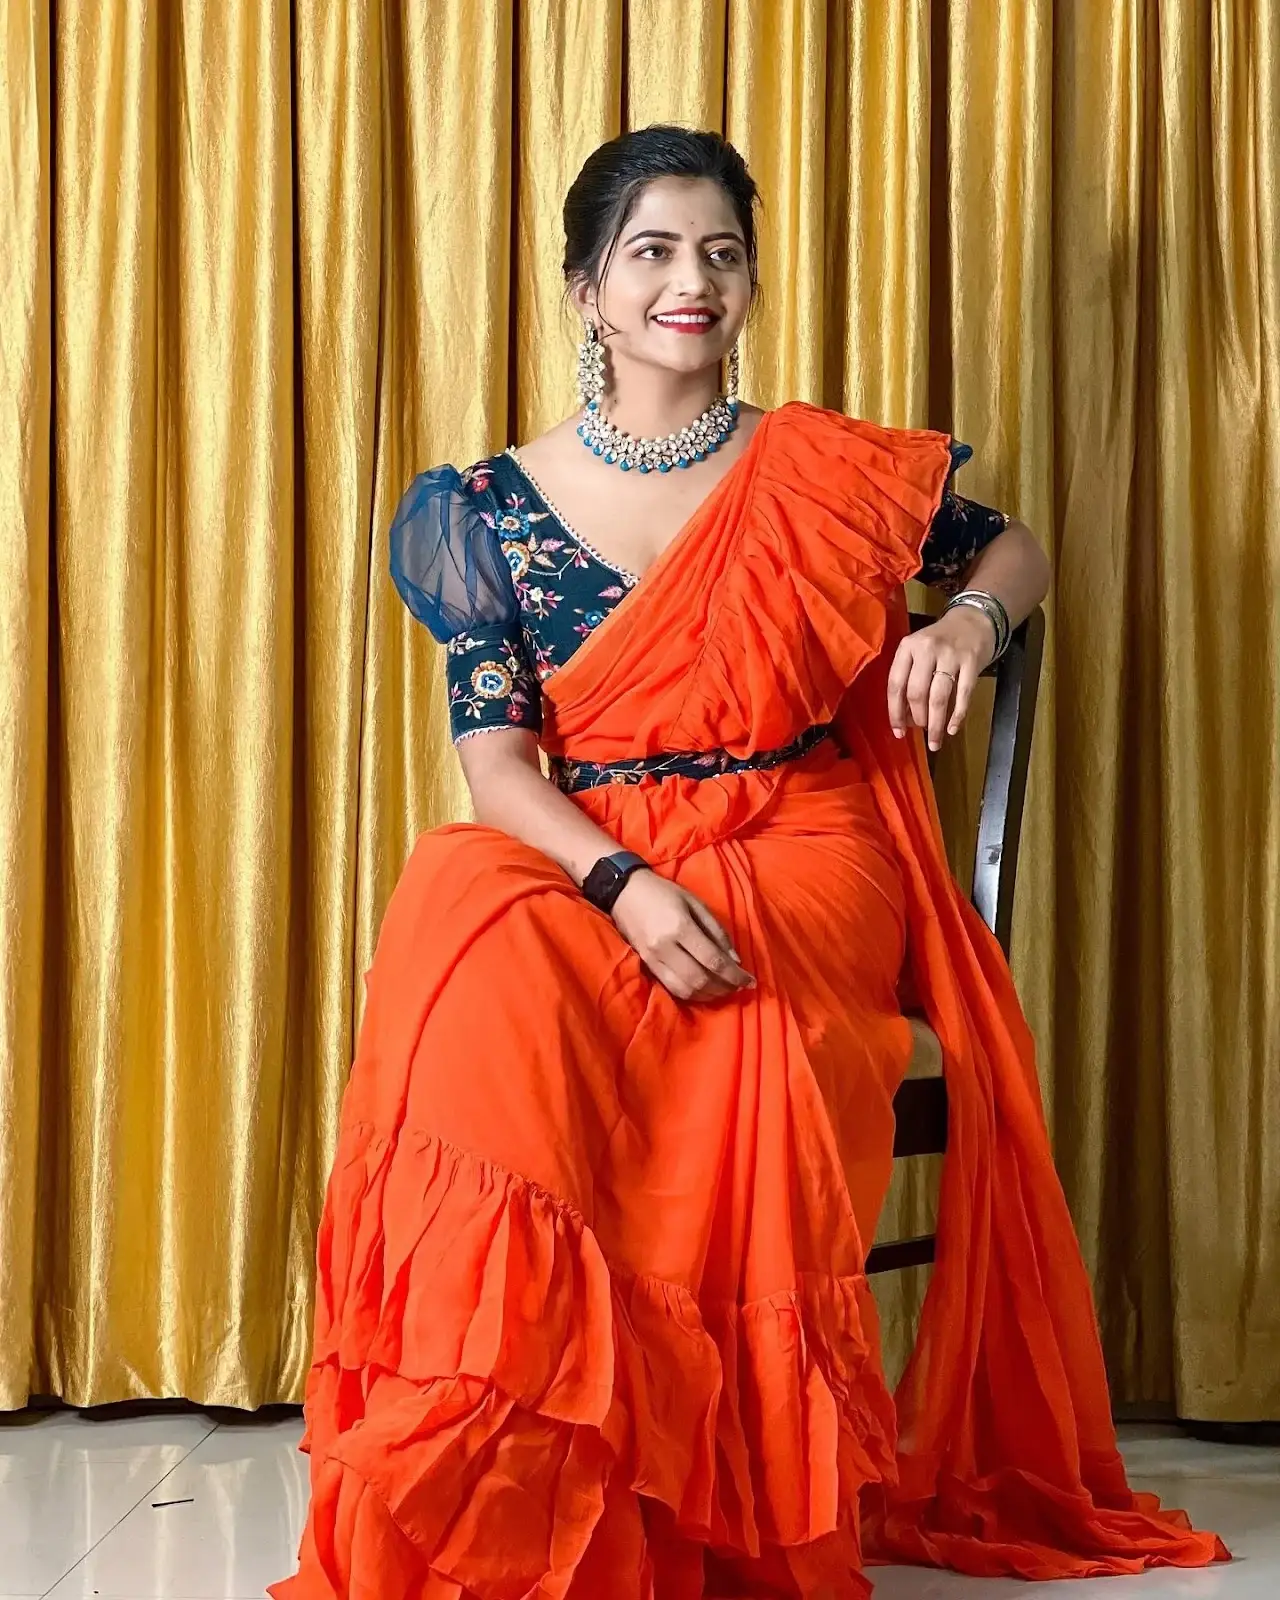 INDIAN TV ACTRESS SHIVA JYOTHI STILLS IN TRADITIONAL ORANGE SAREE 7